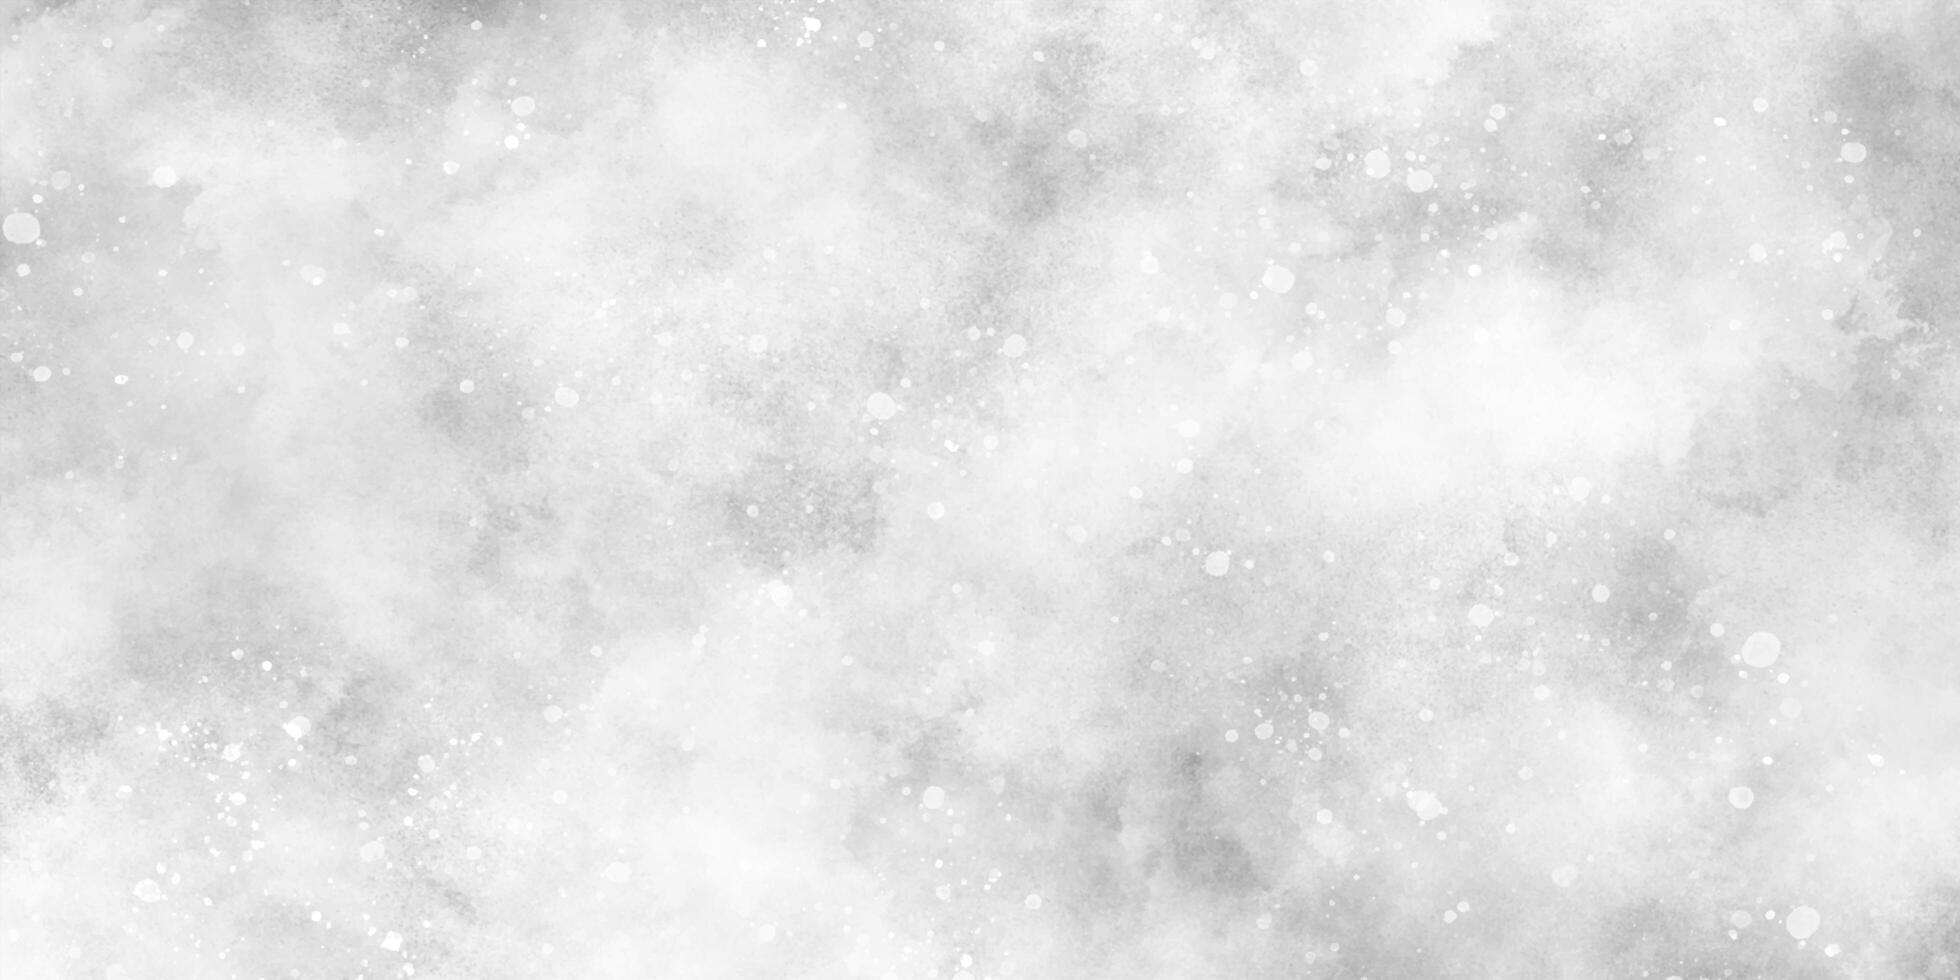 Weiß grau Aquarell mit Spritzen und Sanft glühend glitzert, Schnee fallen im das Schnee im das Winter Morgen, Sonnenschein oder funkelnd Beleuchtung und glänzend glühen Winter Morgen von Schnee fallen Hintergrund. foto